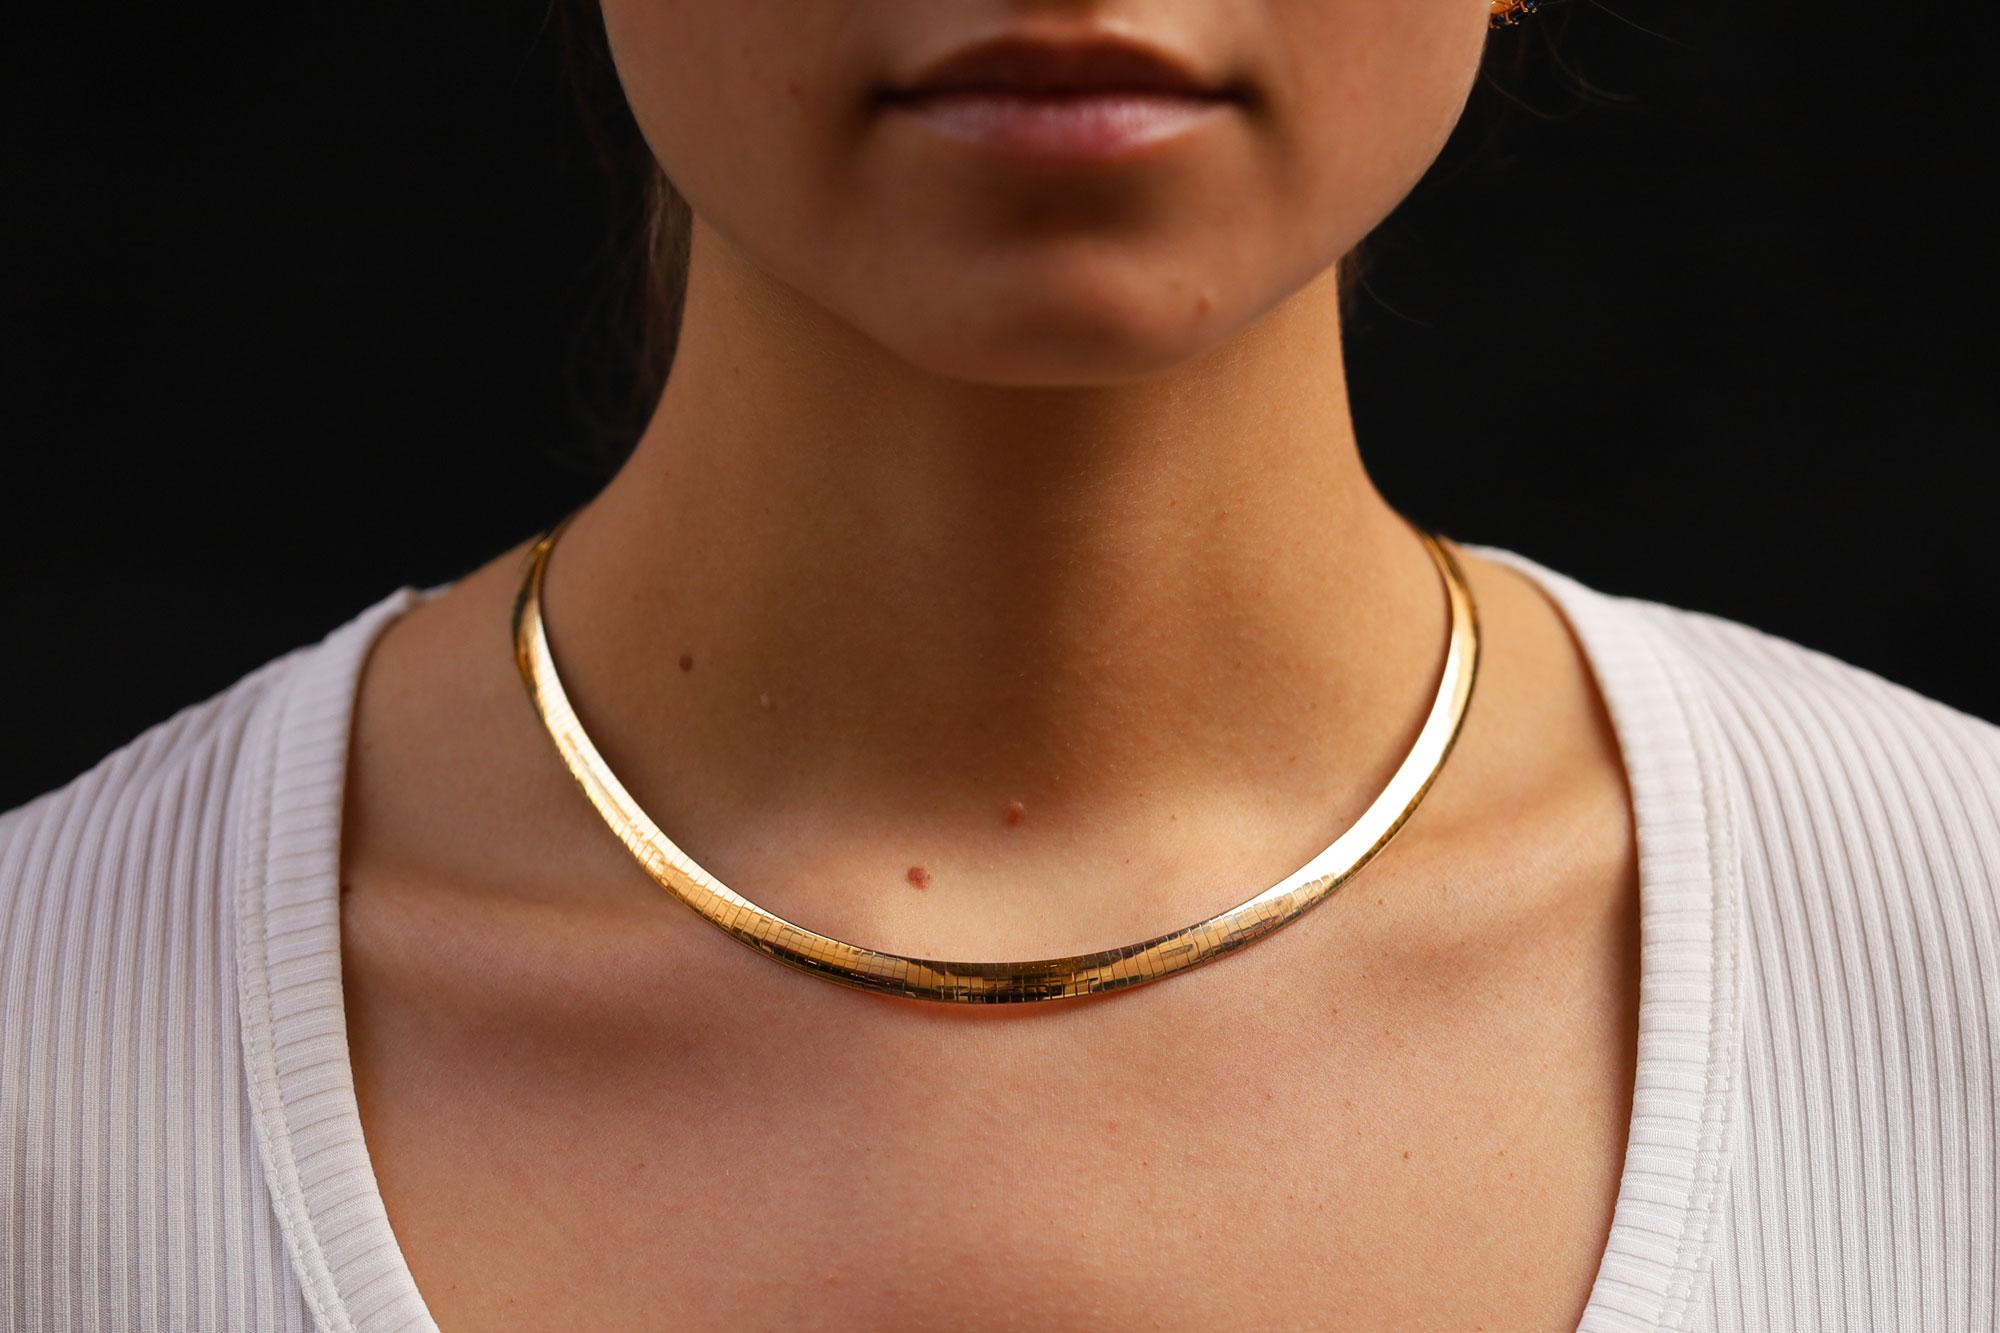 Ce collier Omega vintage est un élément de classe indispensable à toutes les collections de bijoux. Fabriqué de manière durable avec près d'une once d'or 14k, ce collier large et élégant présente un design réversible avec de l'or jaune décadent d'un